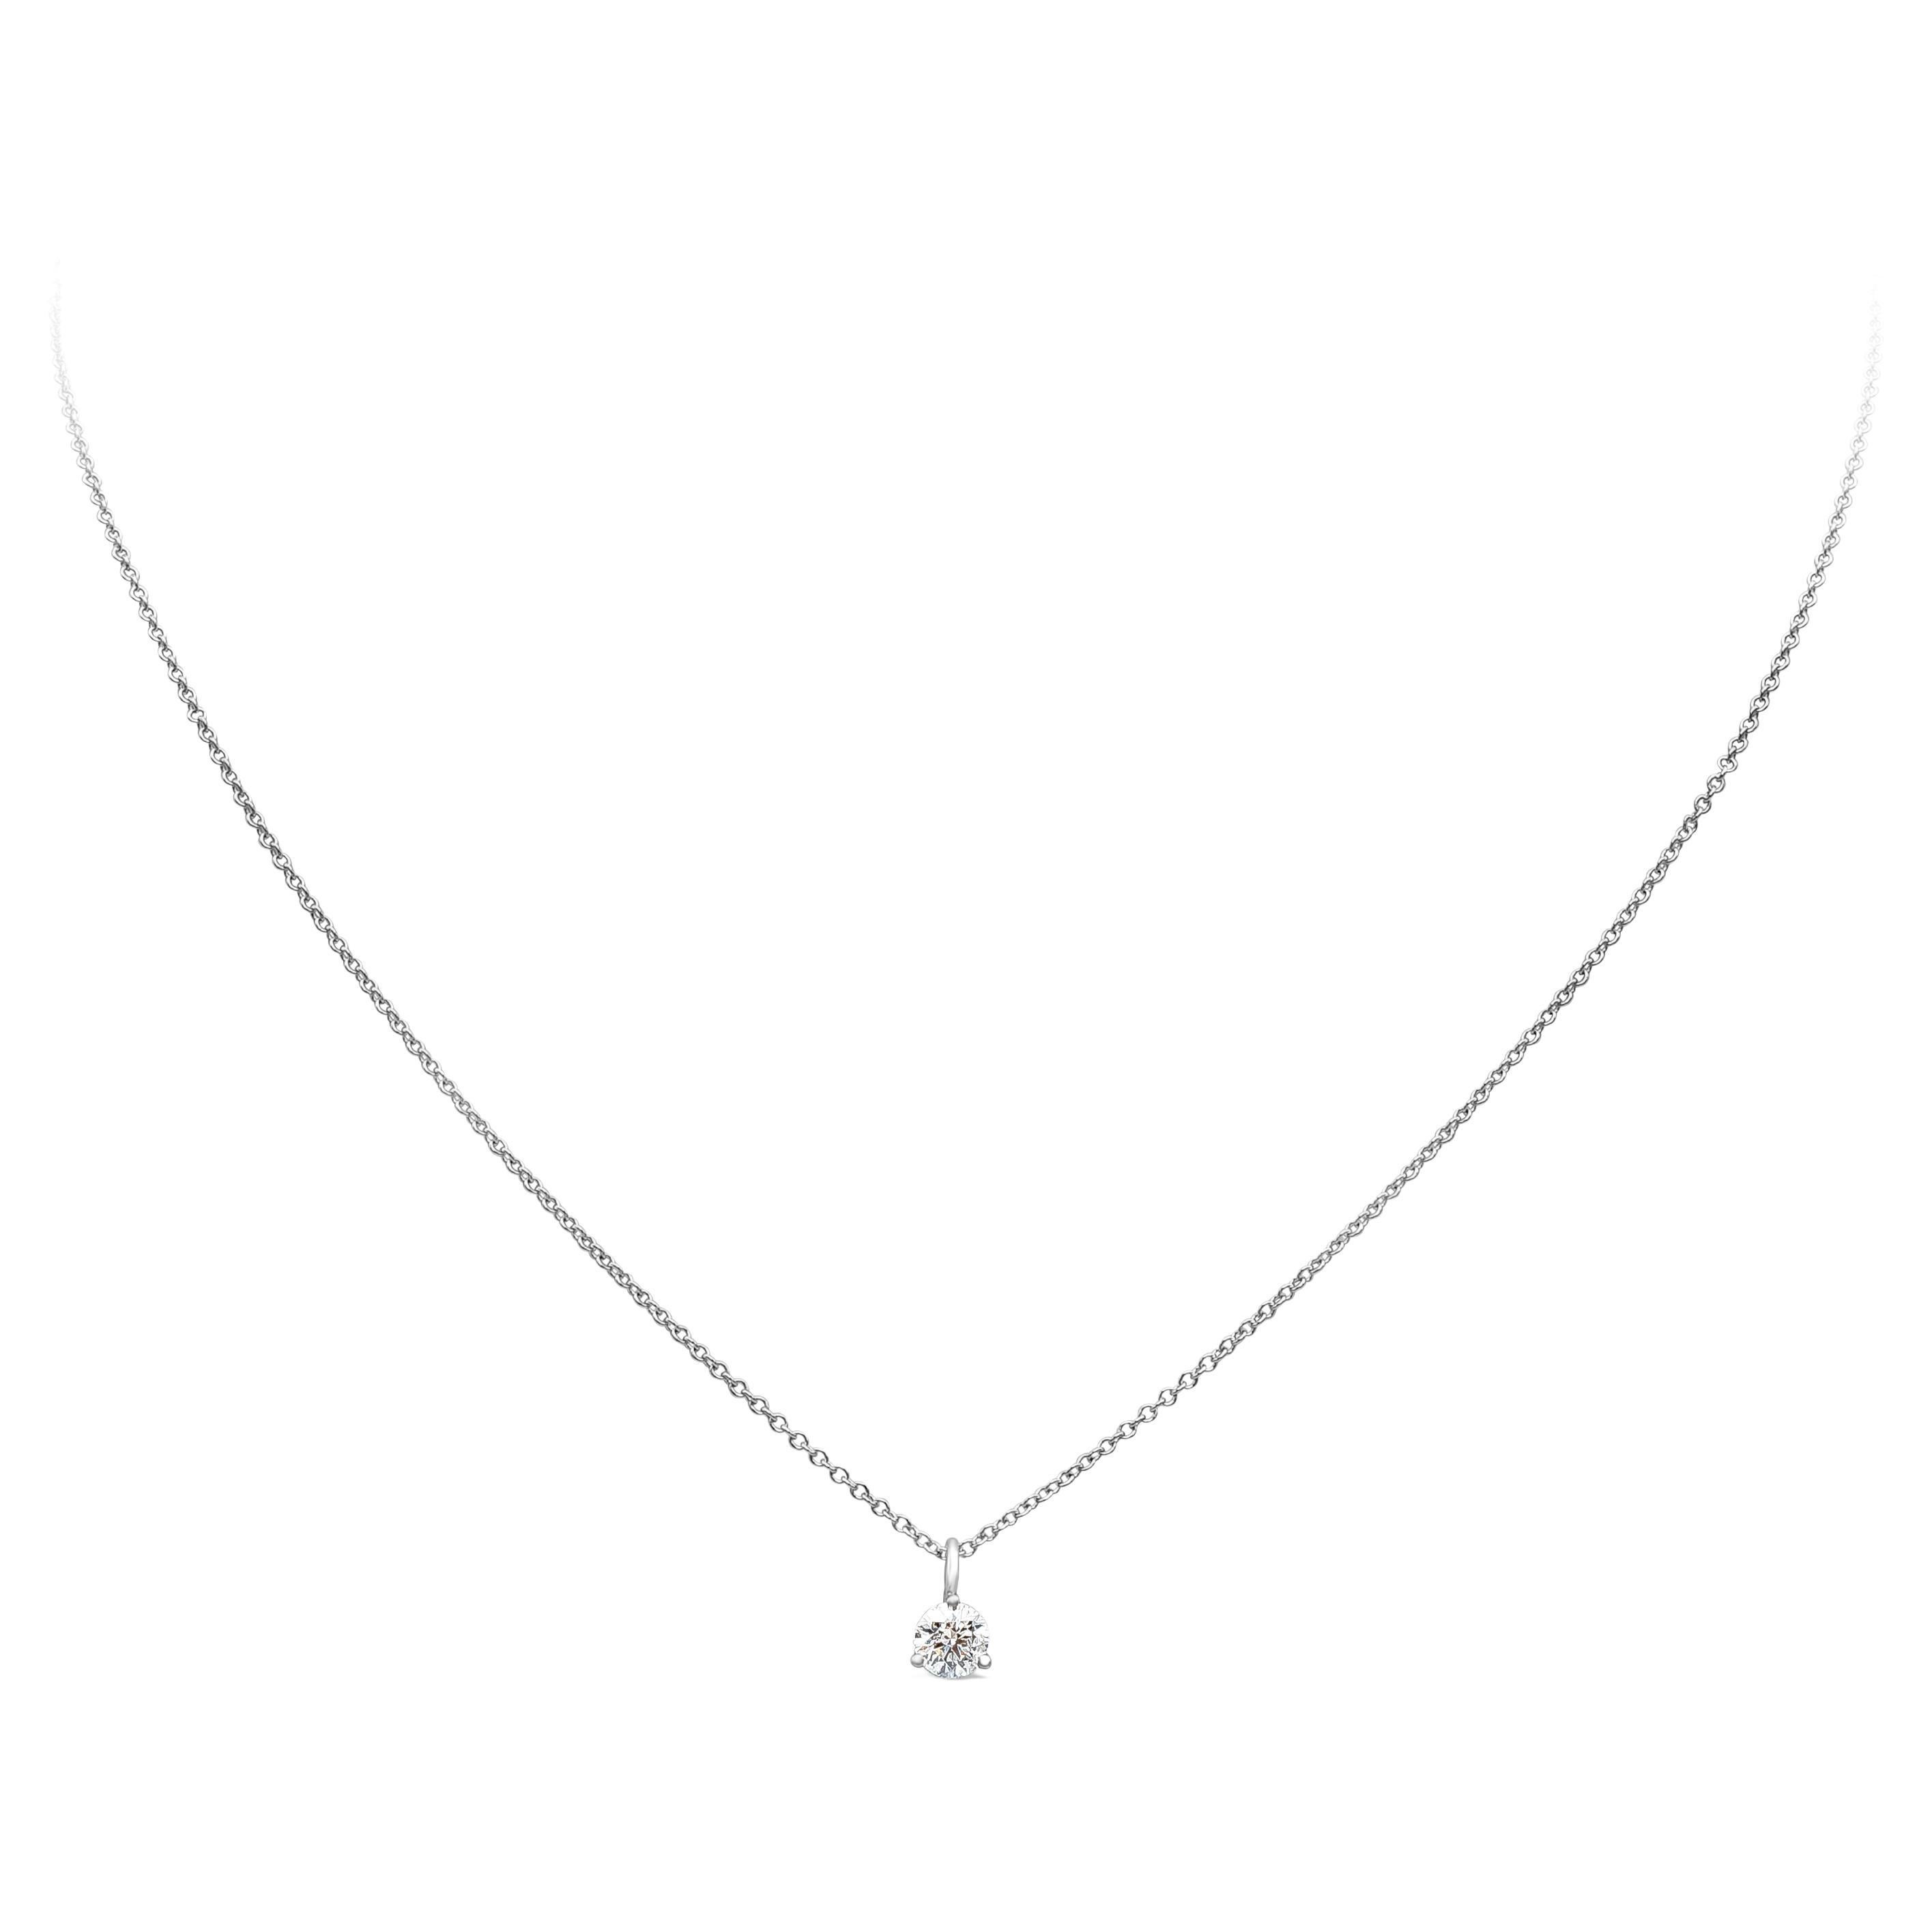 Ce collier pendentif simple et intemporel met en valeur un diamant brillant de taille ronde. Le diamant pèse 0,31 carat et est monté dans une magnifique monture à trois griffes. Réalisé en or blanc 14 carats et 18 carats. 

Style disponible dans